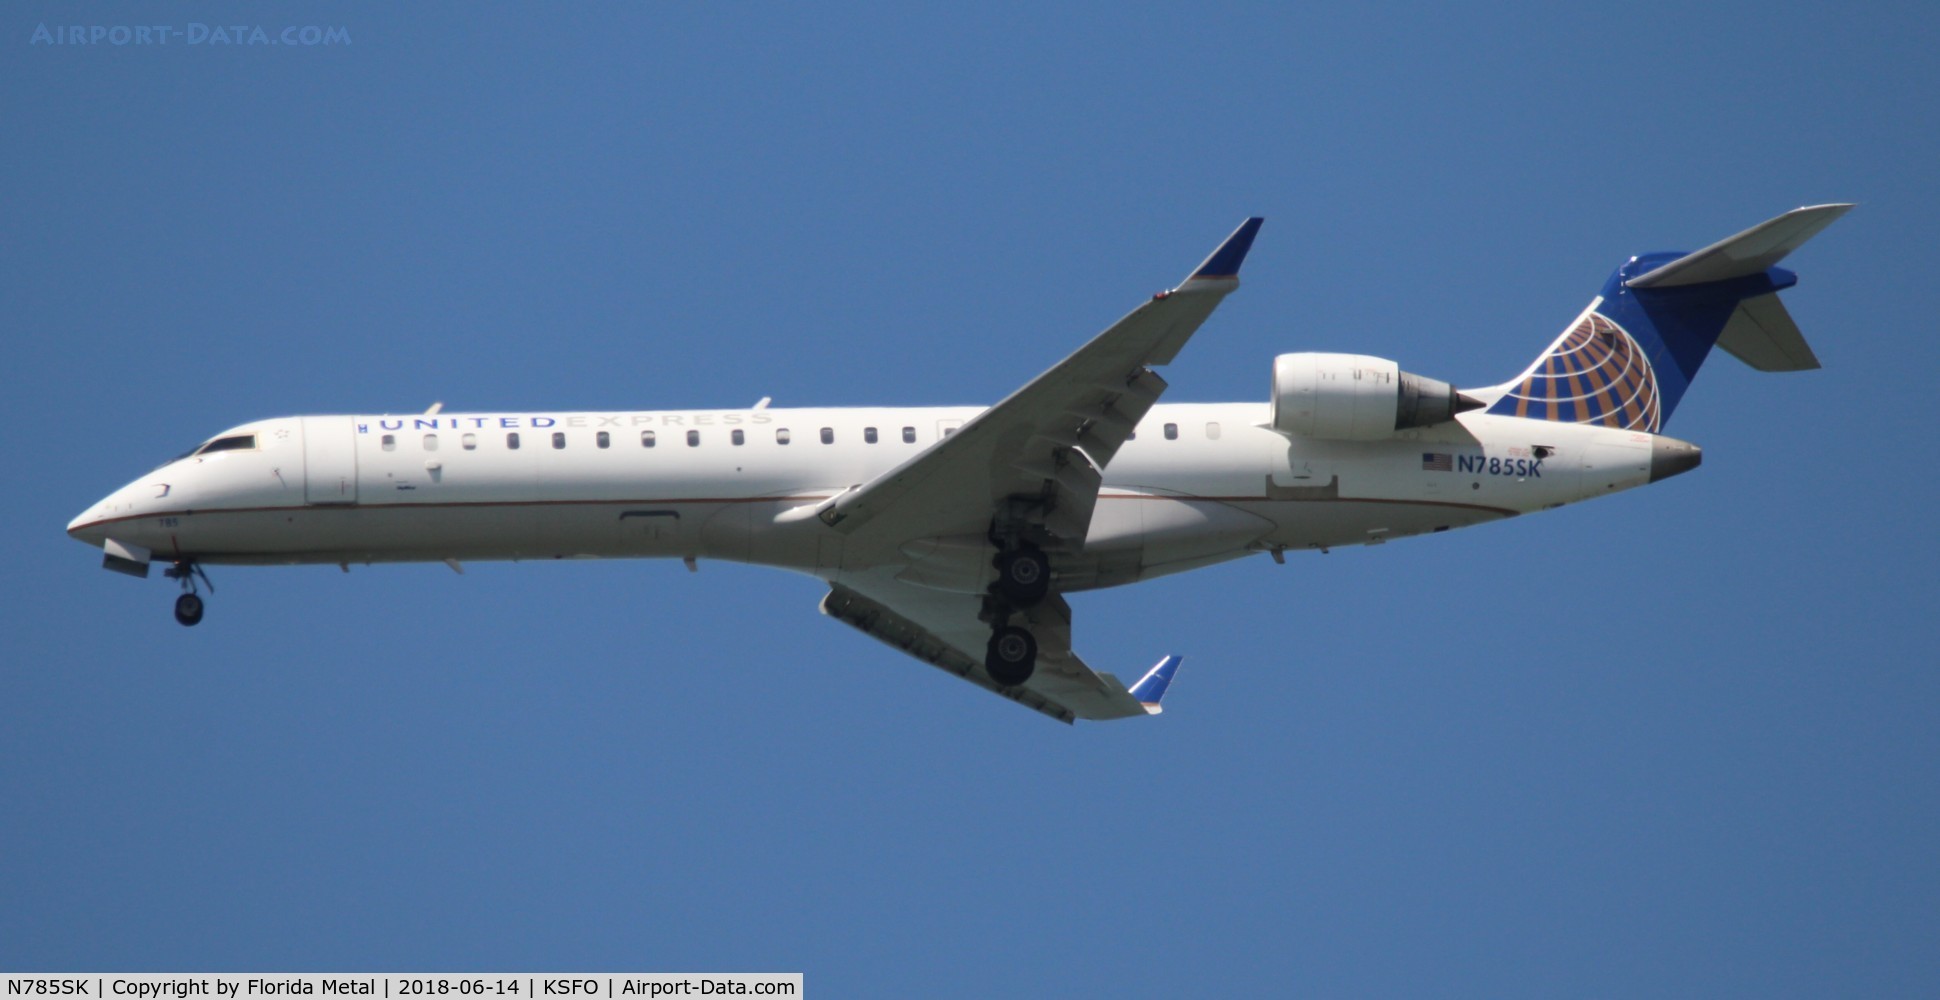 N785SK, 2009 Bombardier CRJ-700 (CL-600-2C10) Regional Jet C/N 10285, United Express